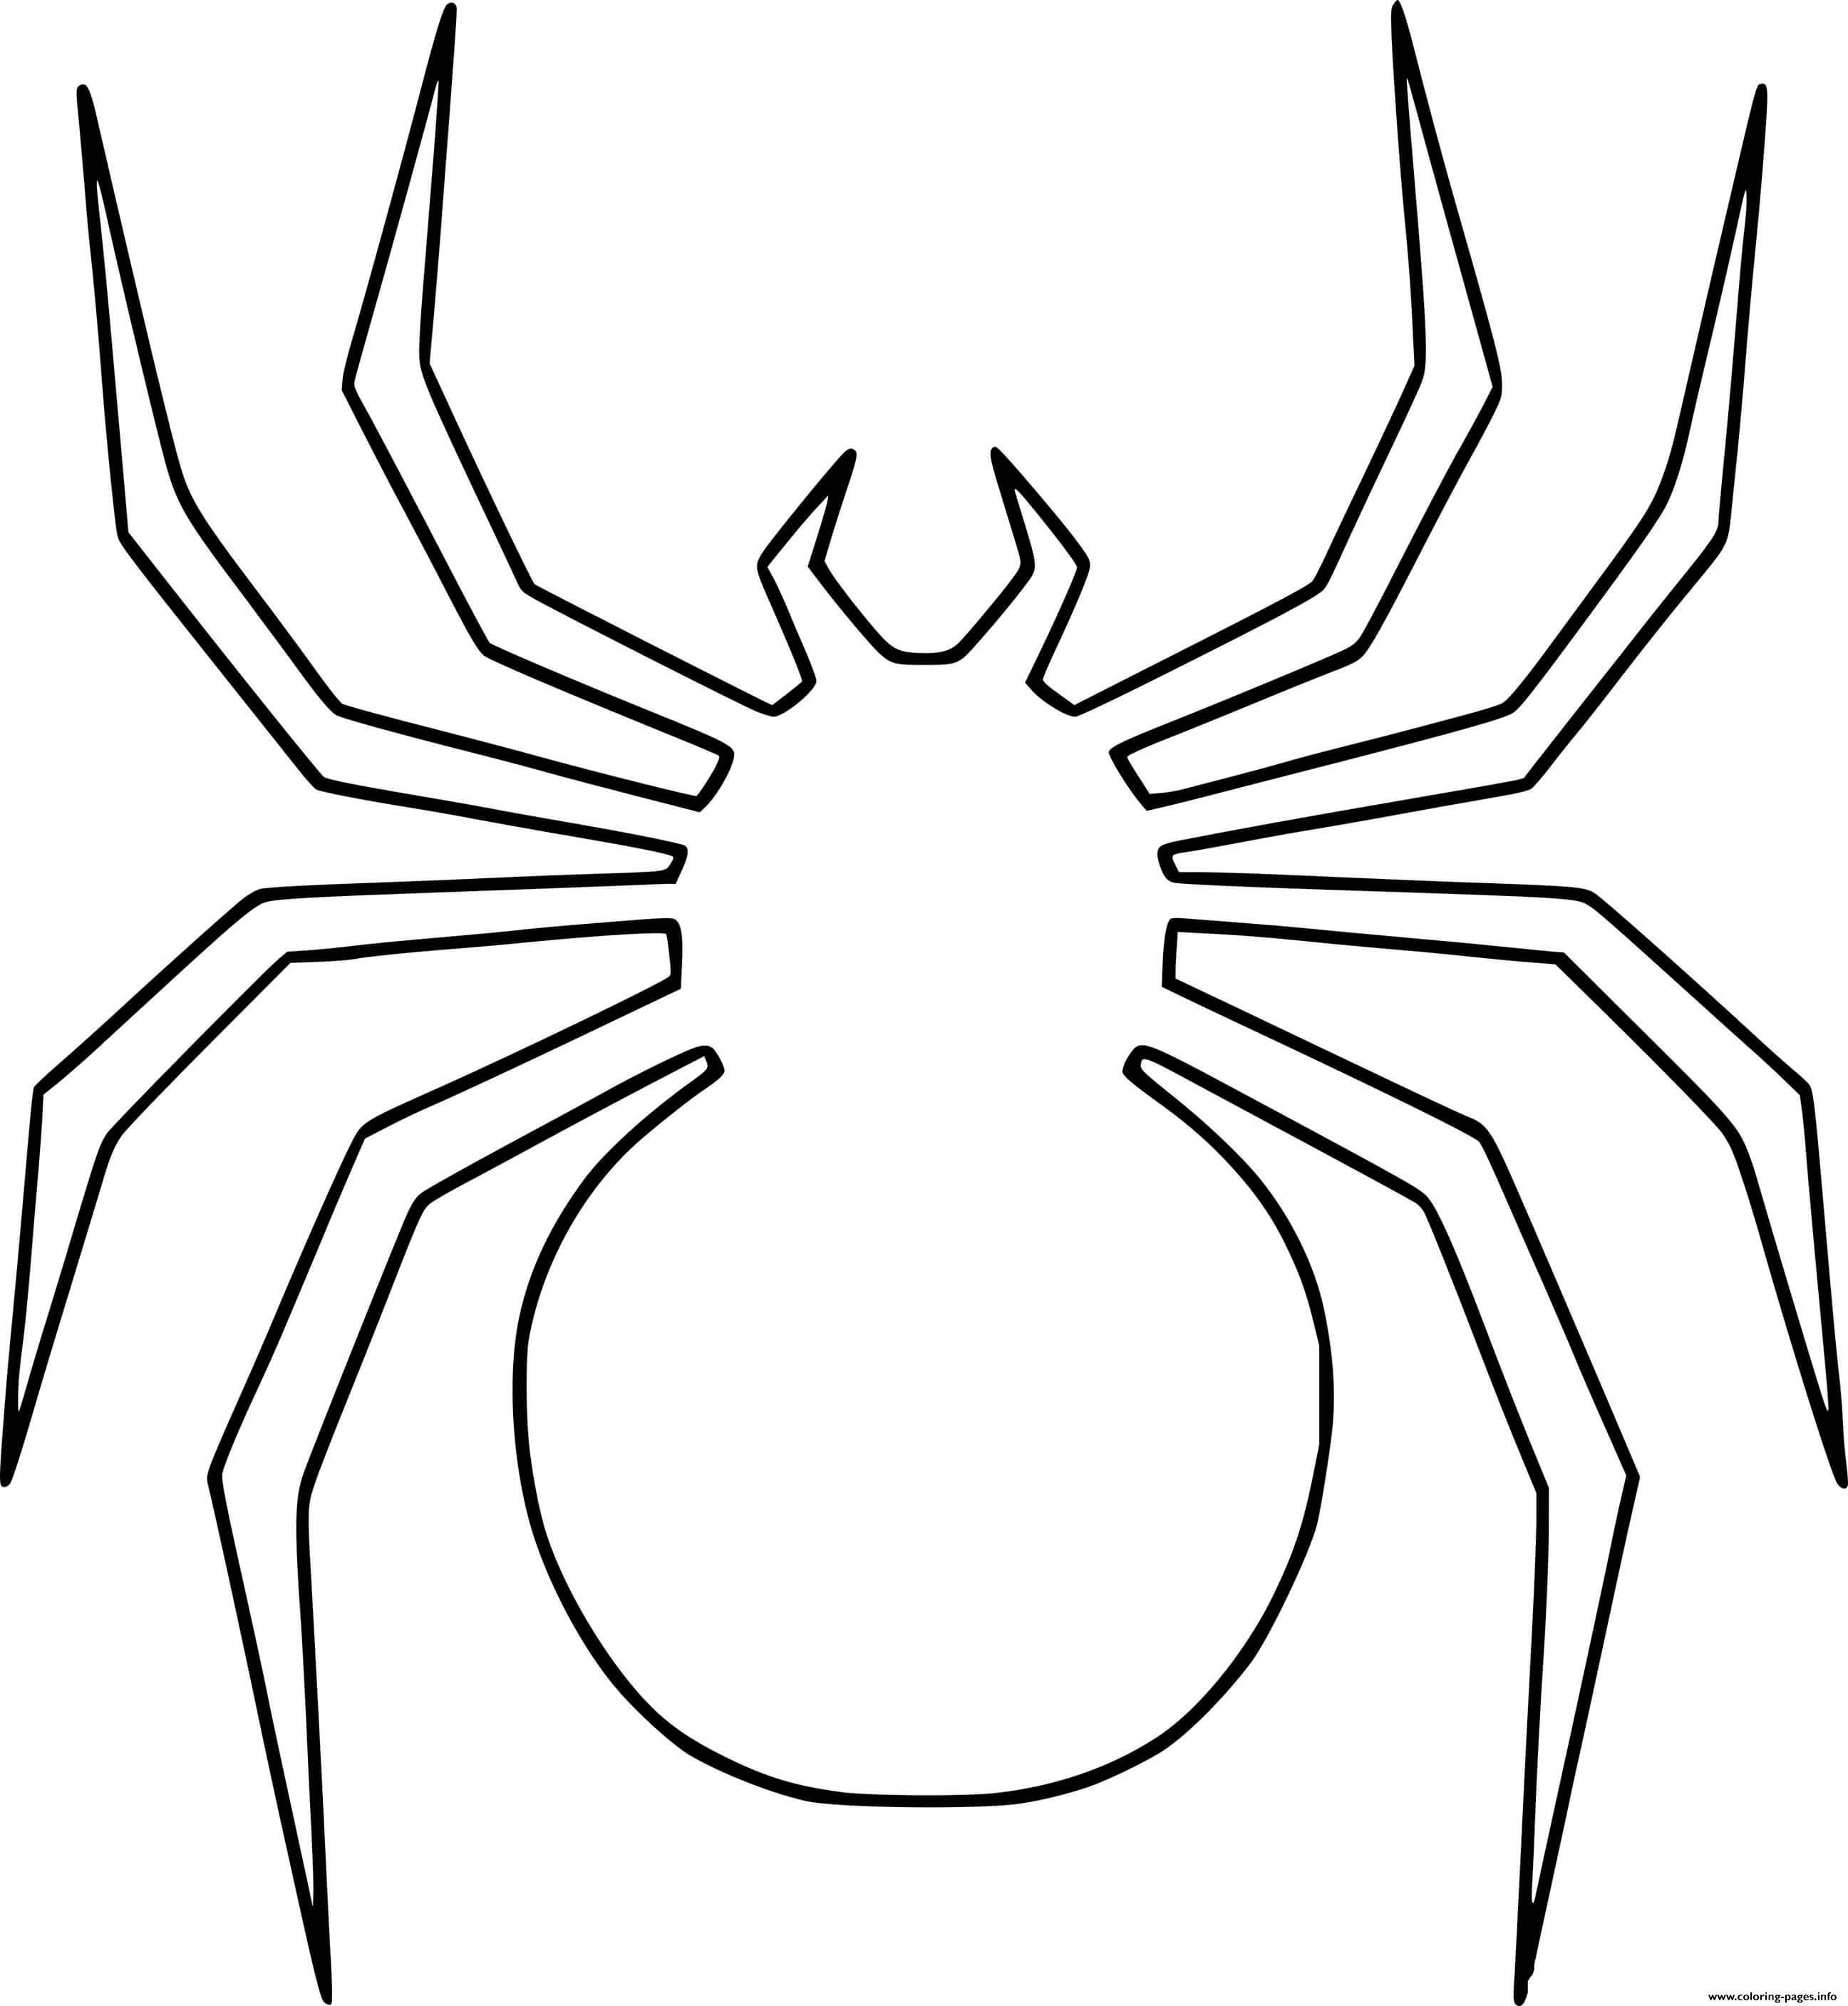 Huge Spider Outline coloring